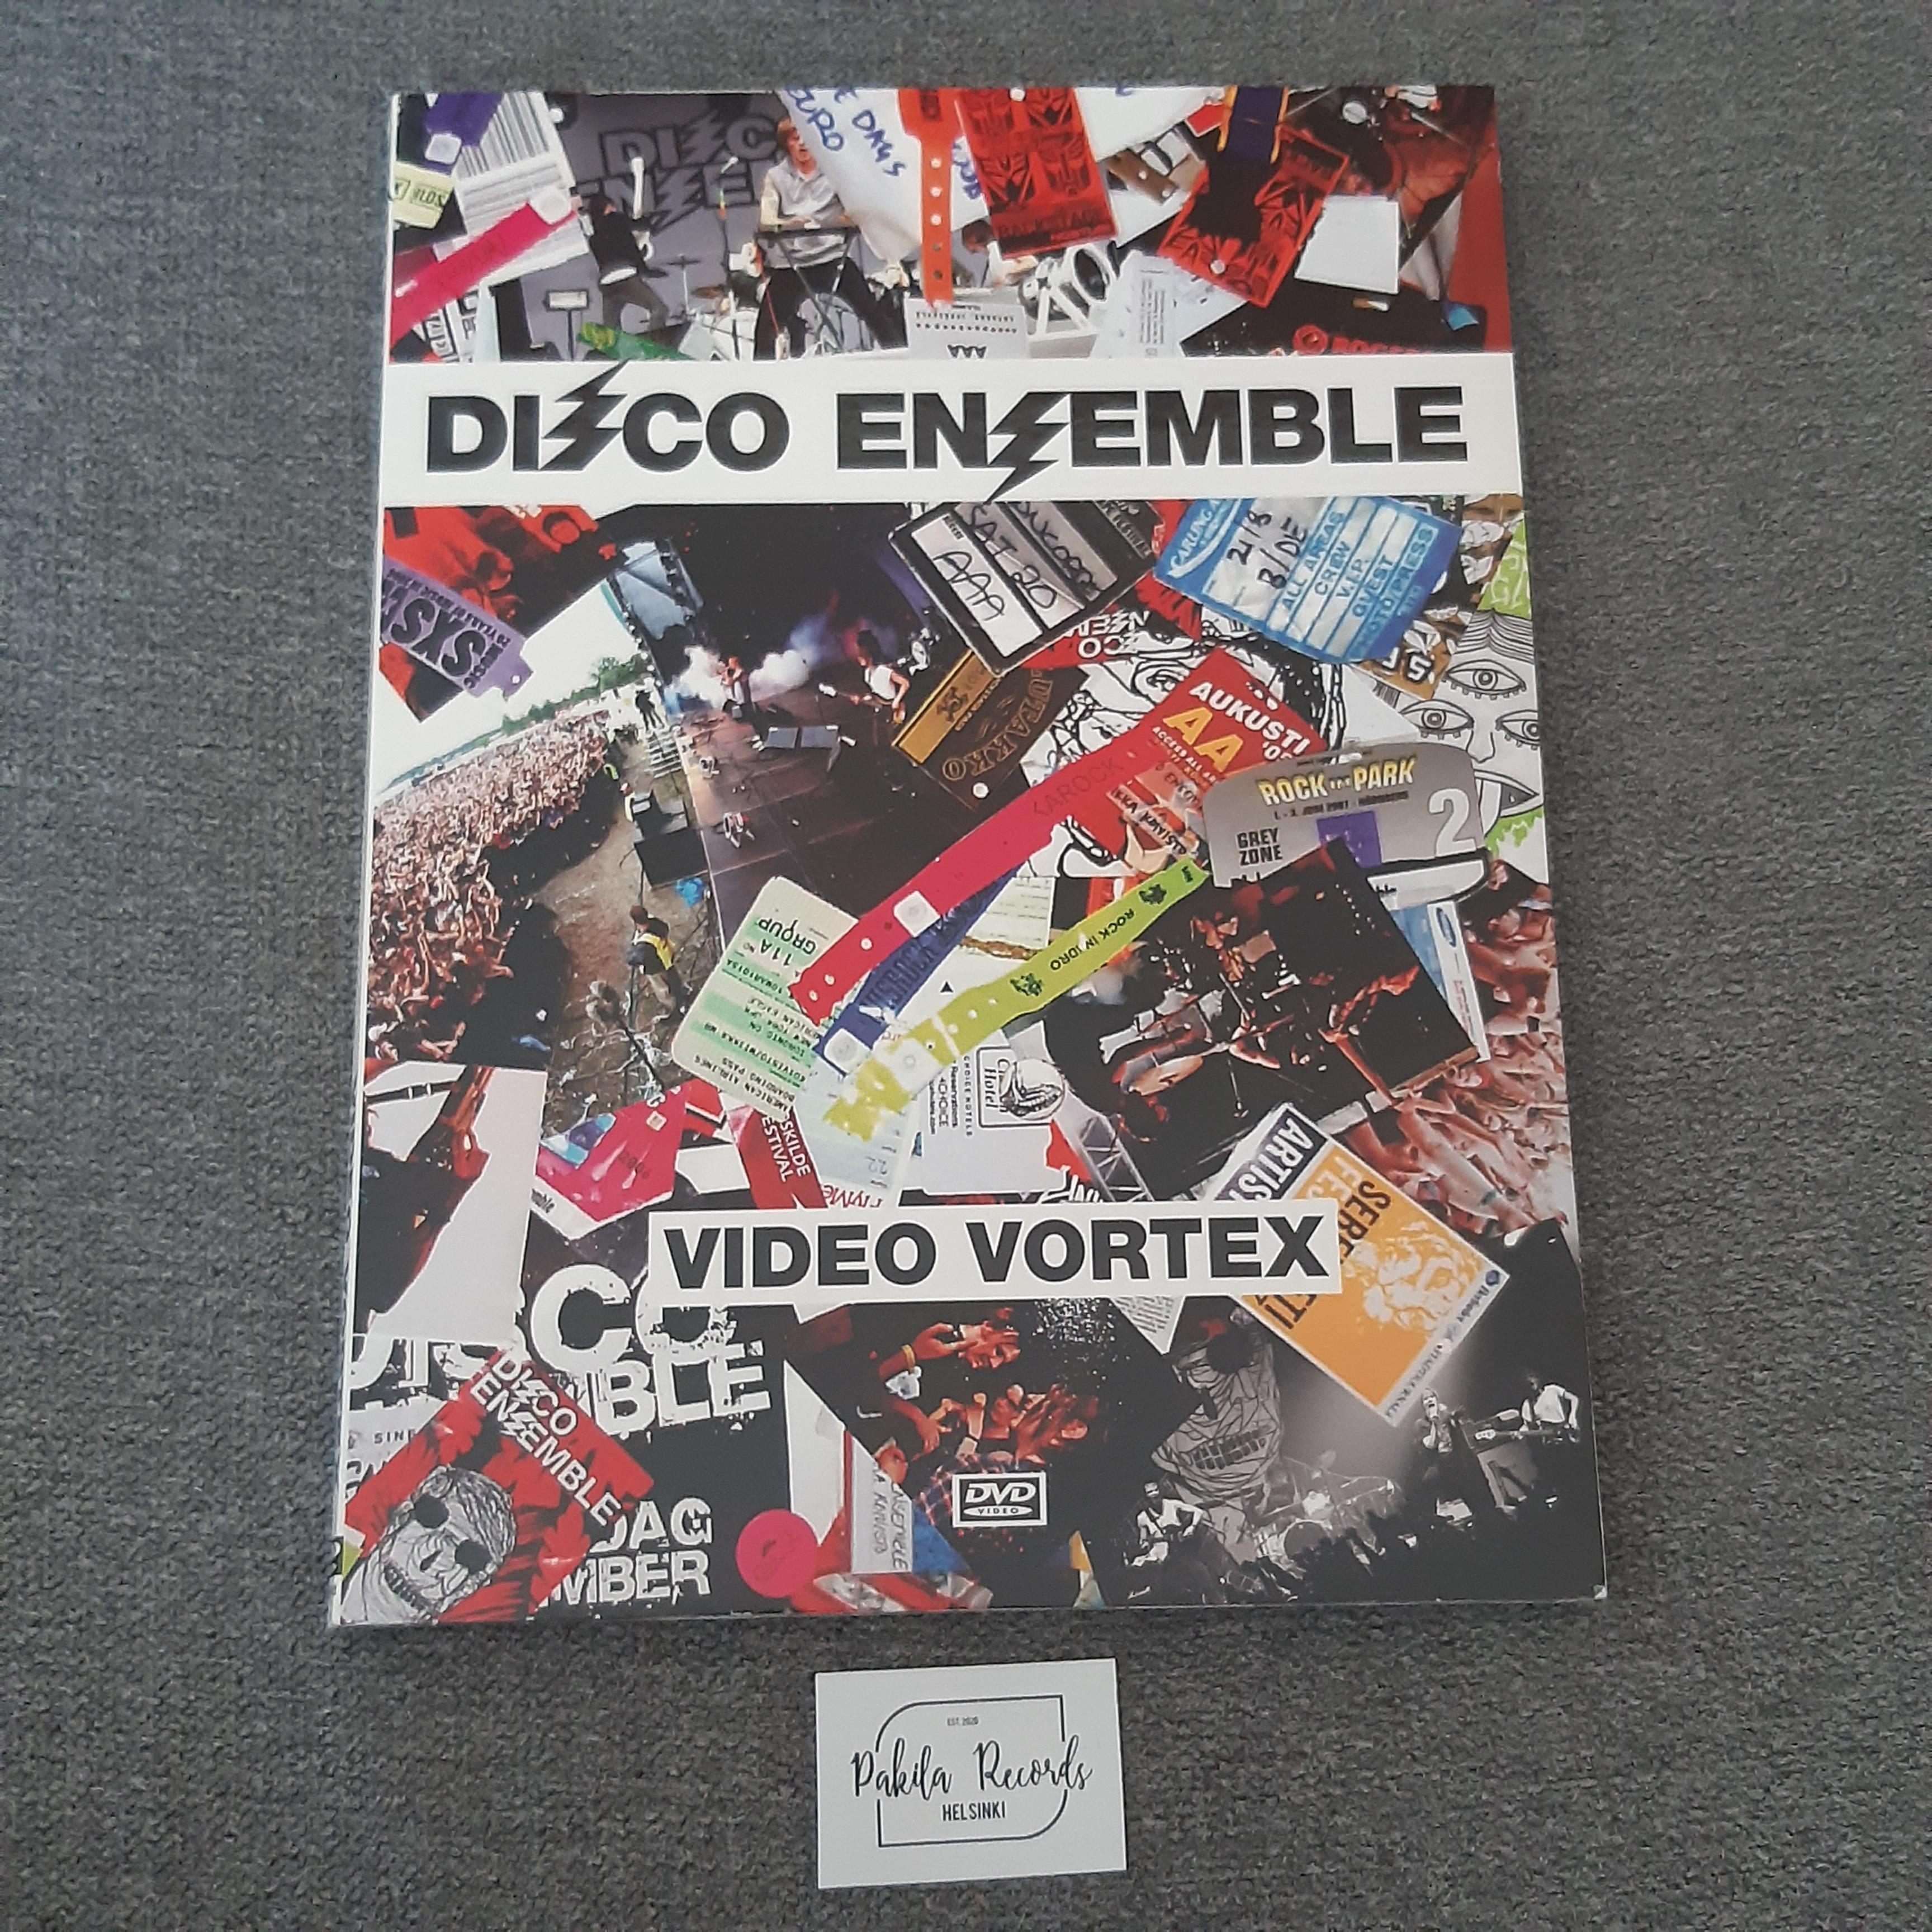 Disco Ensemble - Video Vortex - DVD (käytetty)